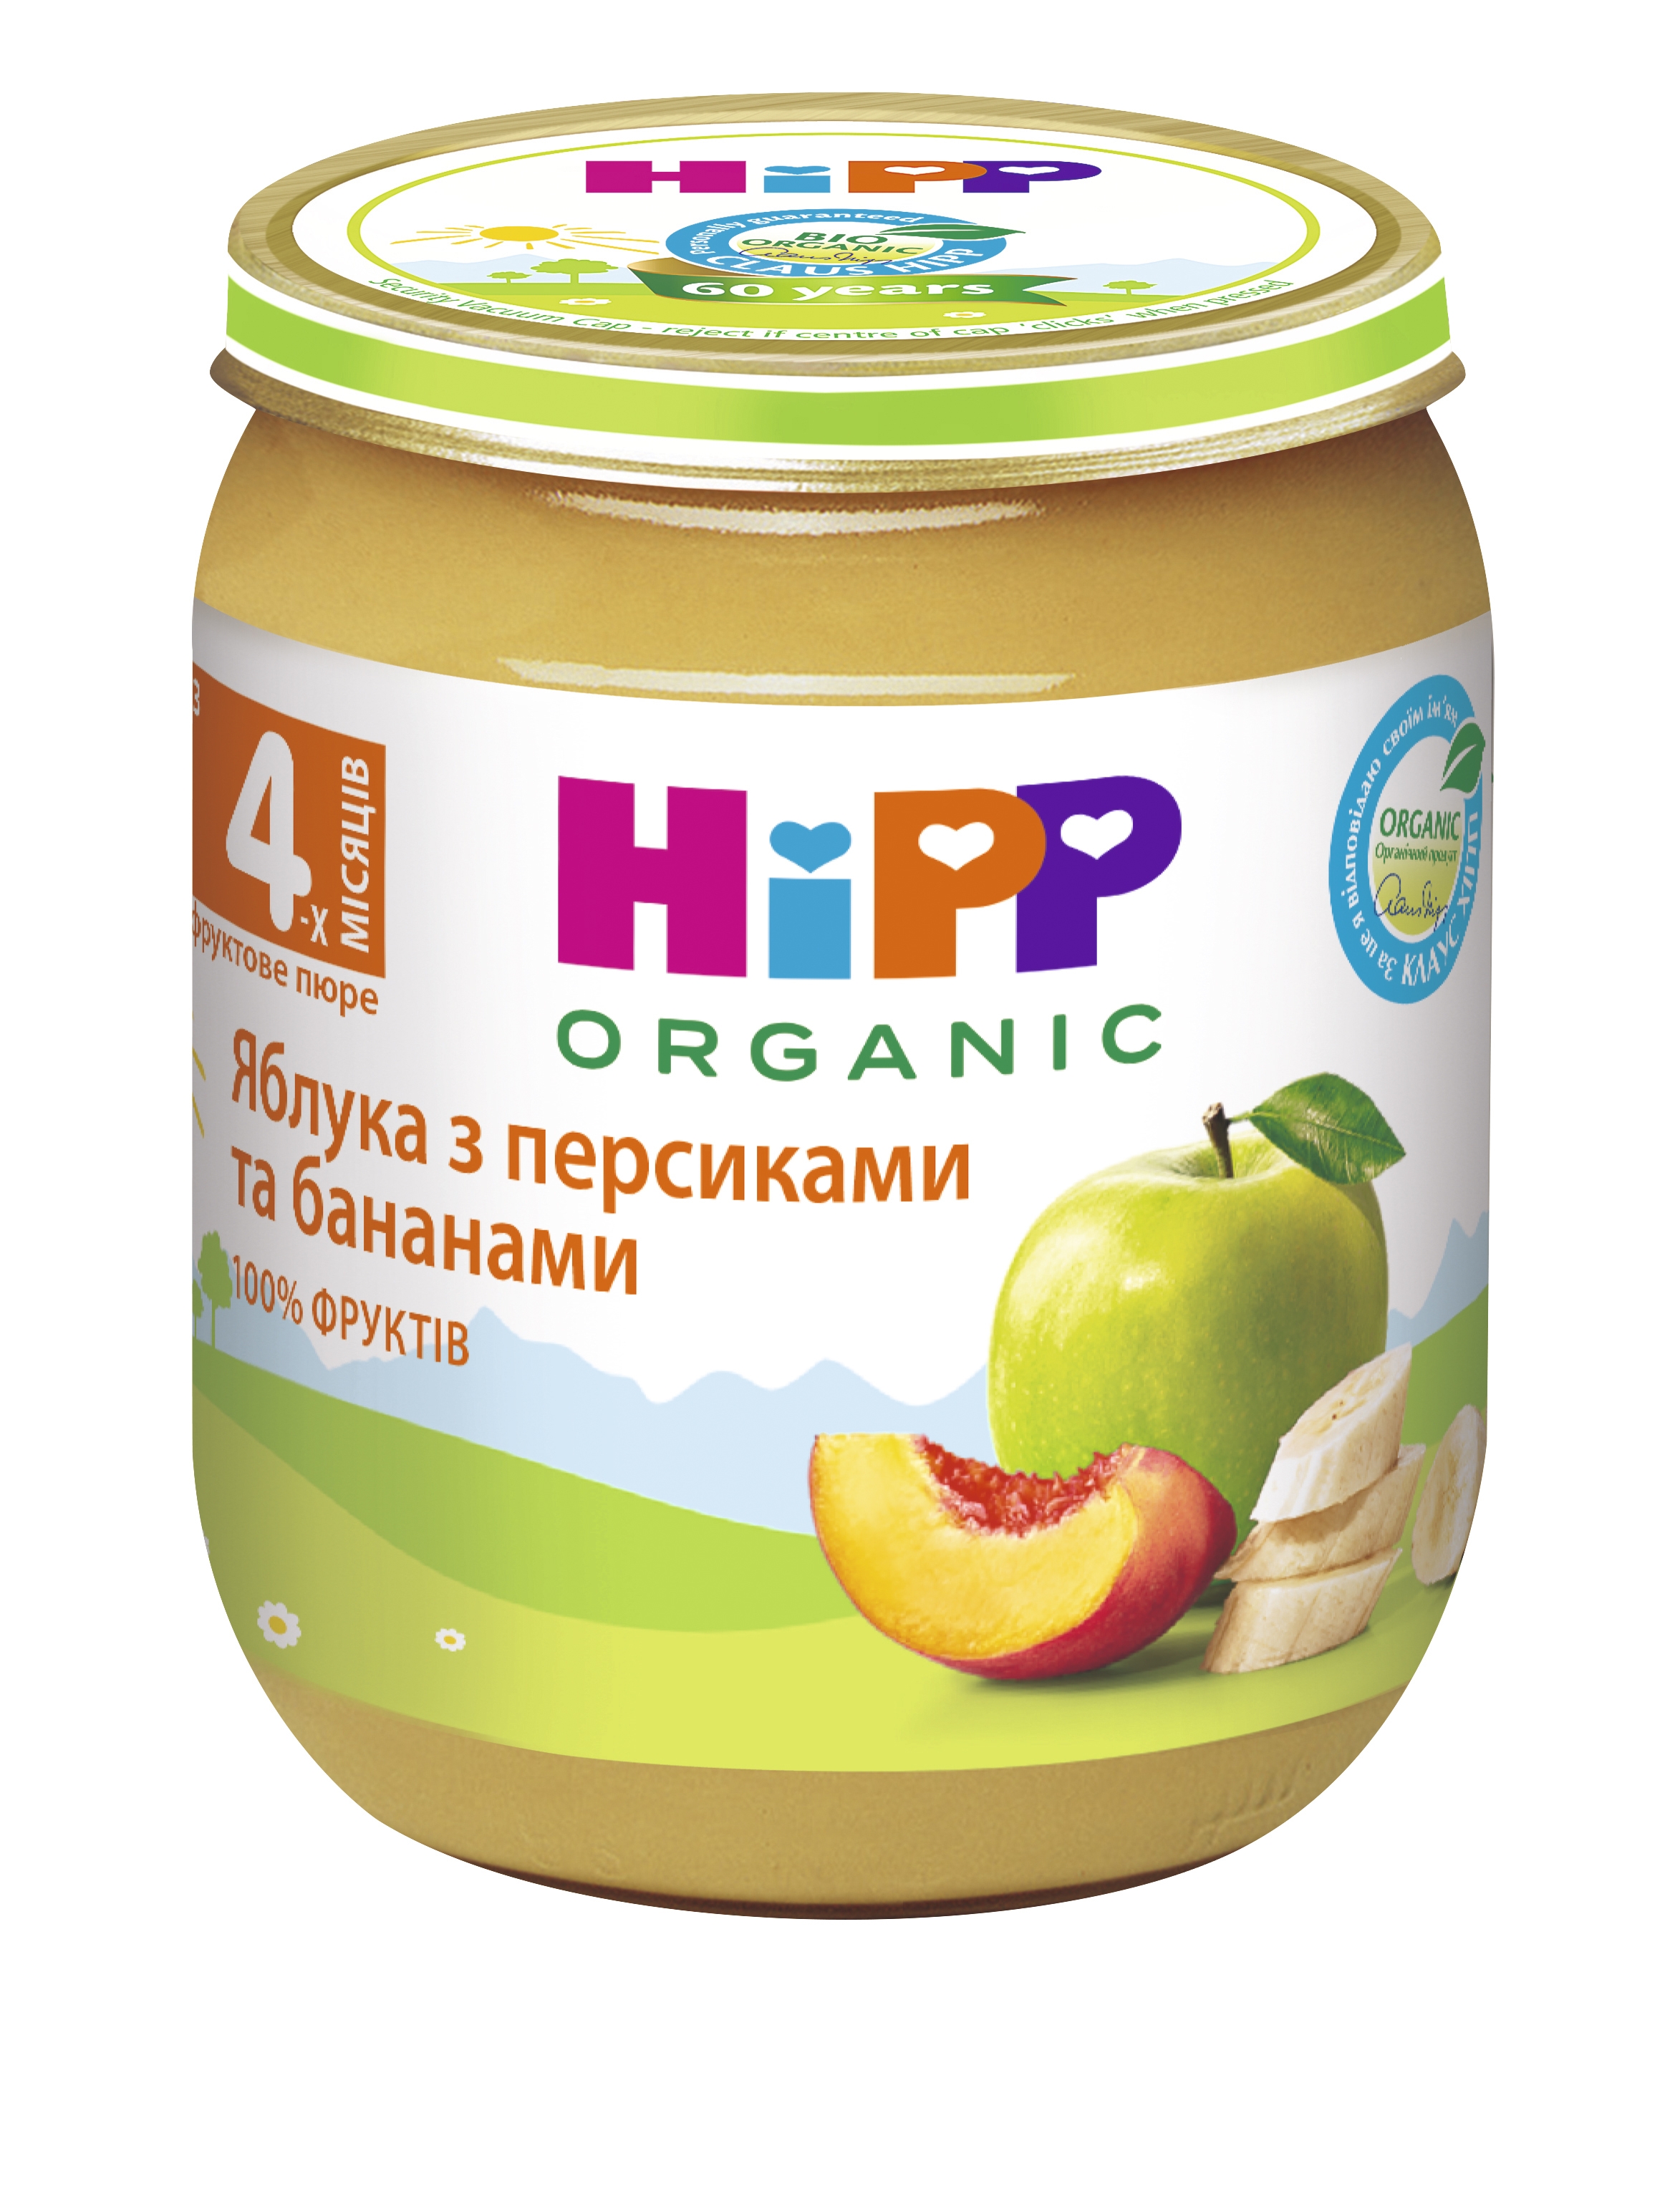 Органічне пюре HiPP Яблука з персиками і бананами, 125 г - фото 1